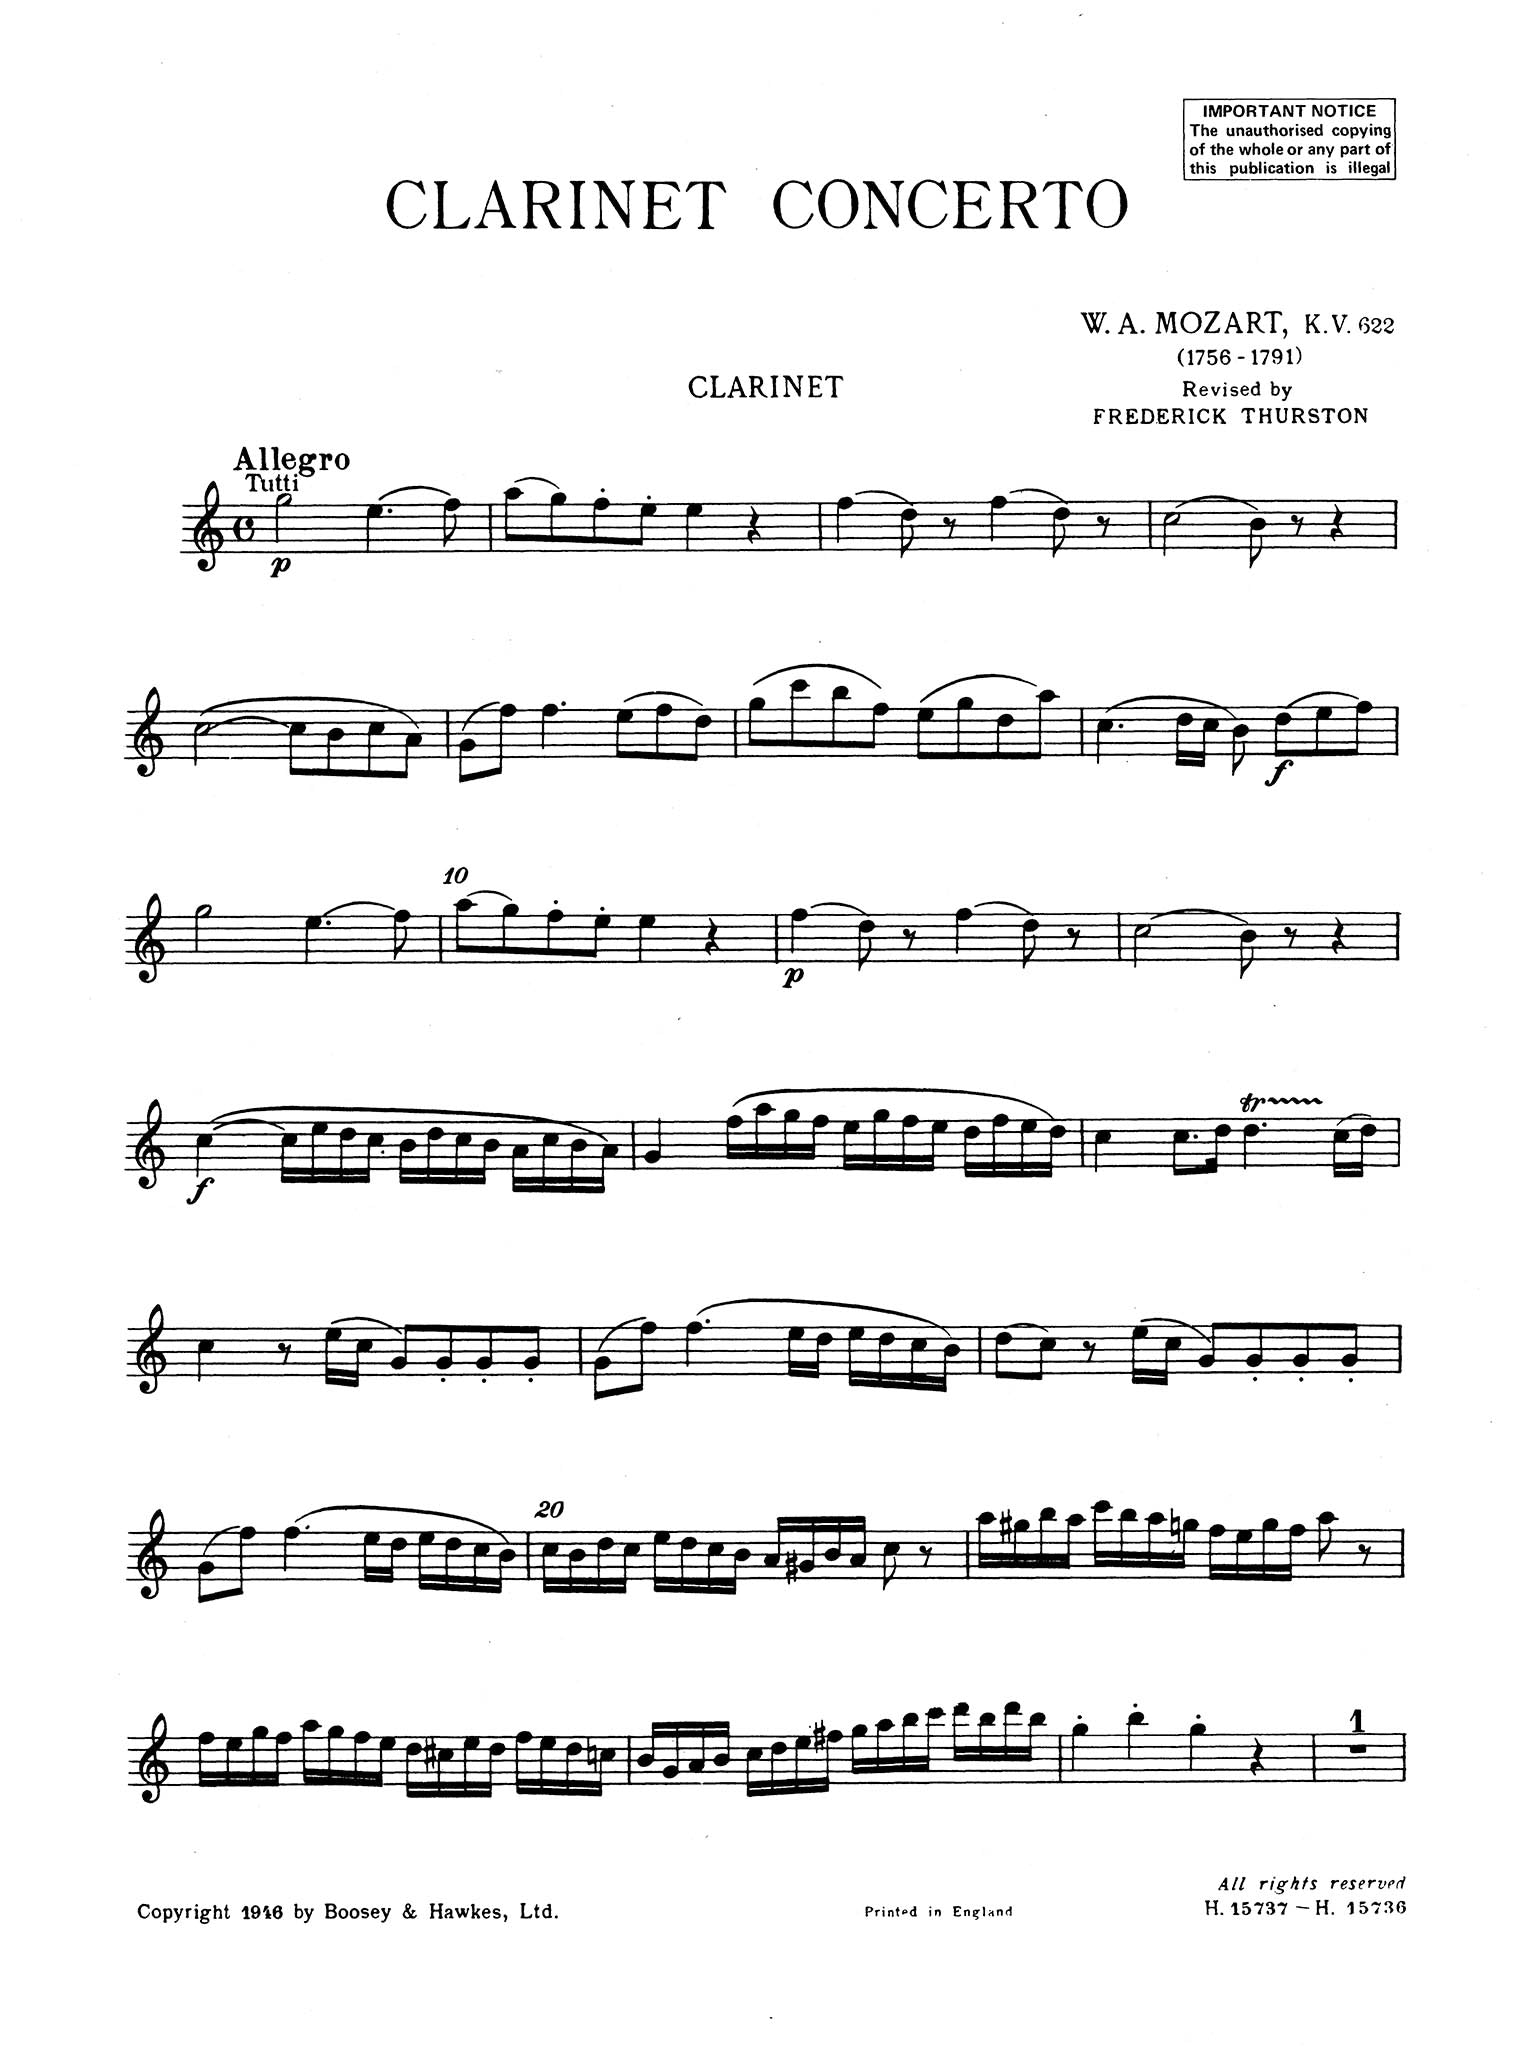  Clarinet Concerto in A Major, K. 622 Clarinet part